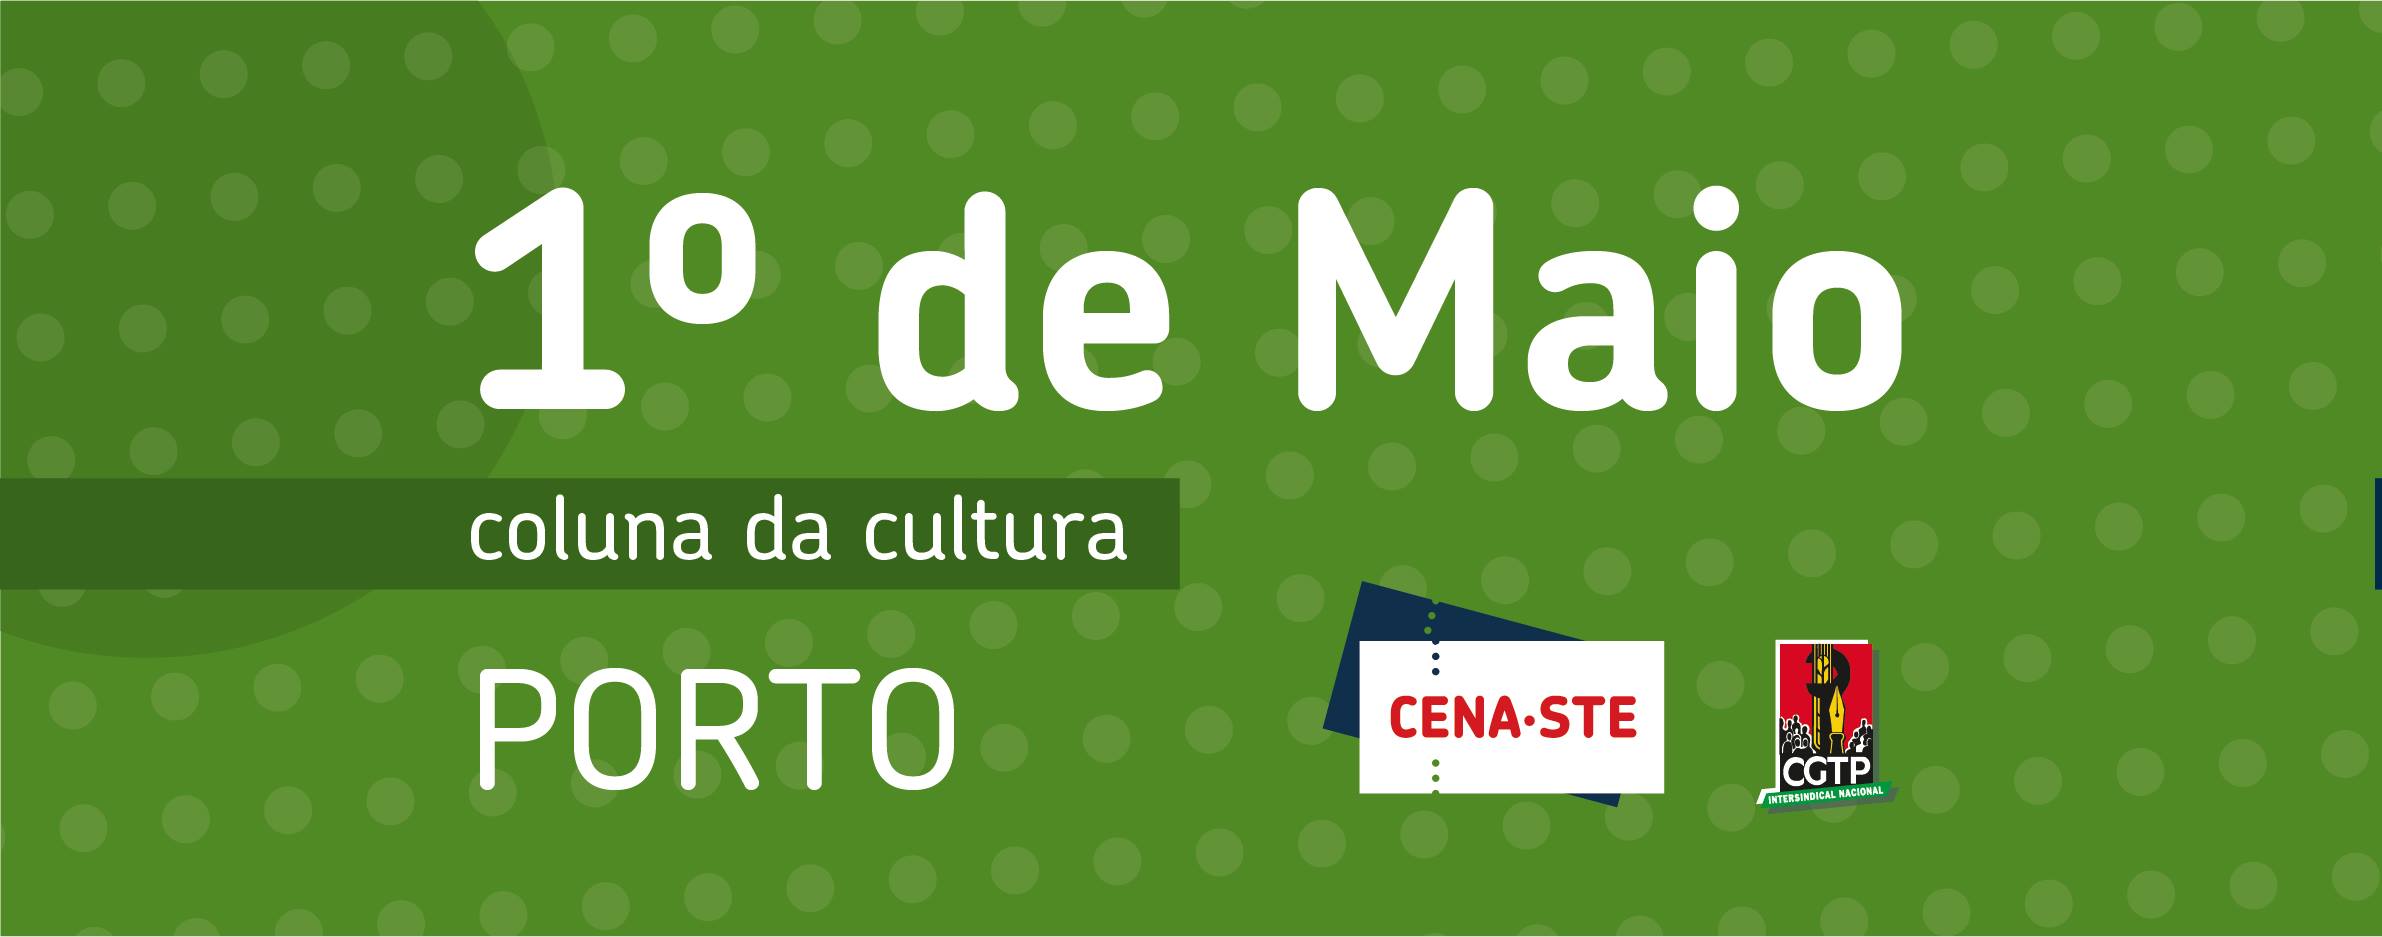 1º de Maio | CENA-STE | Porto